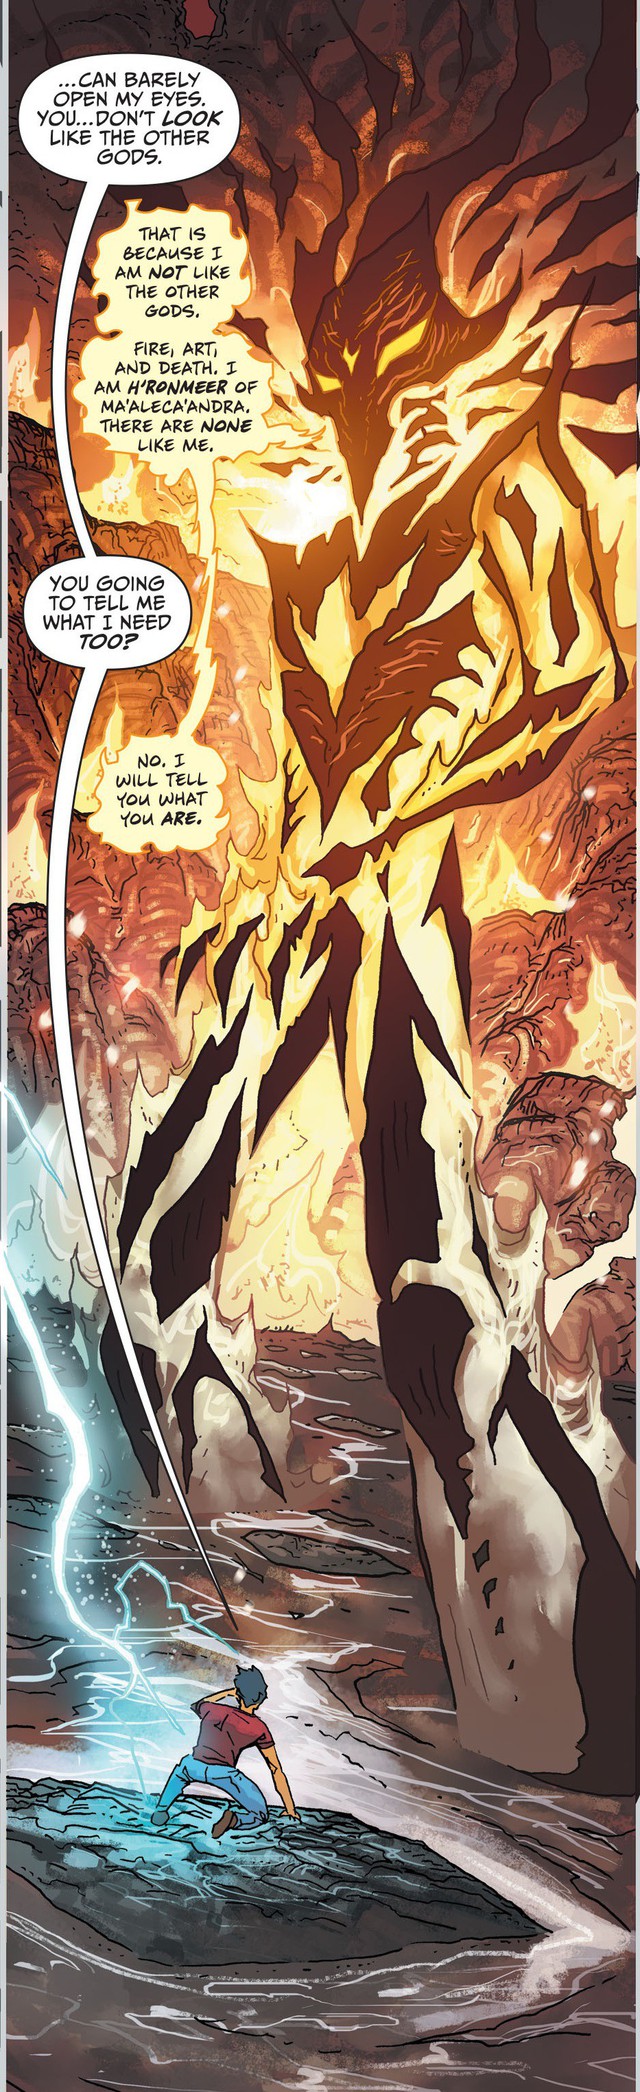 6 vị thần quyền năng ban sức mạnh cho siêu anh hùng Shazam là ai? - Ảnh 5.